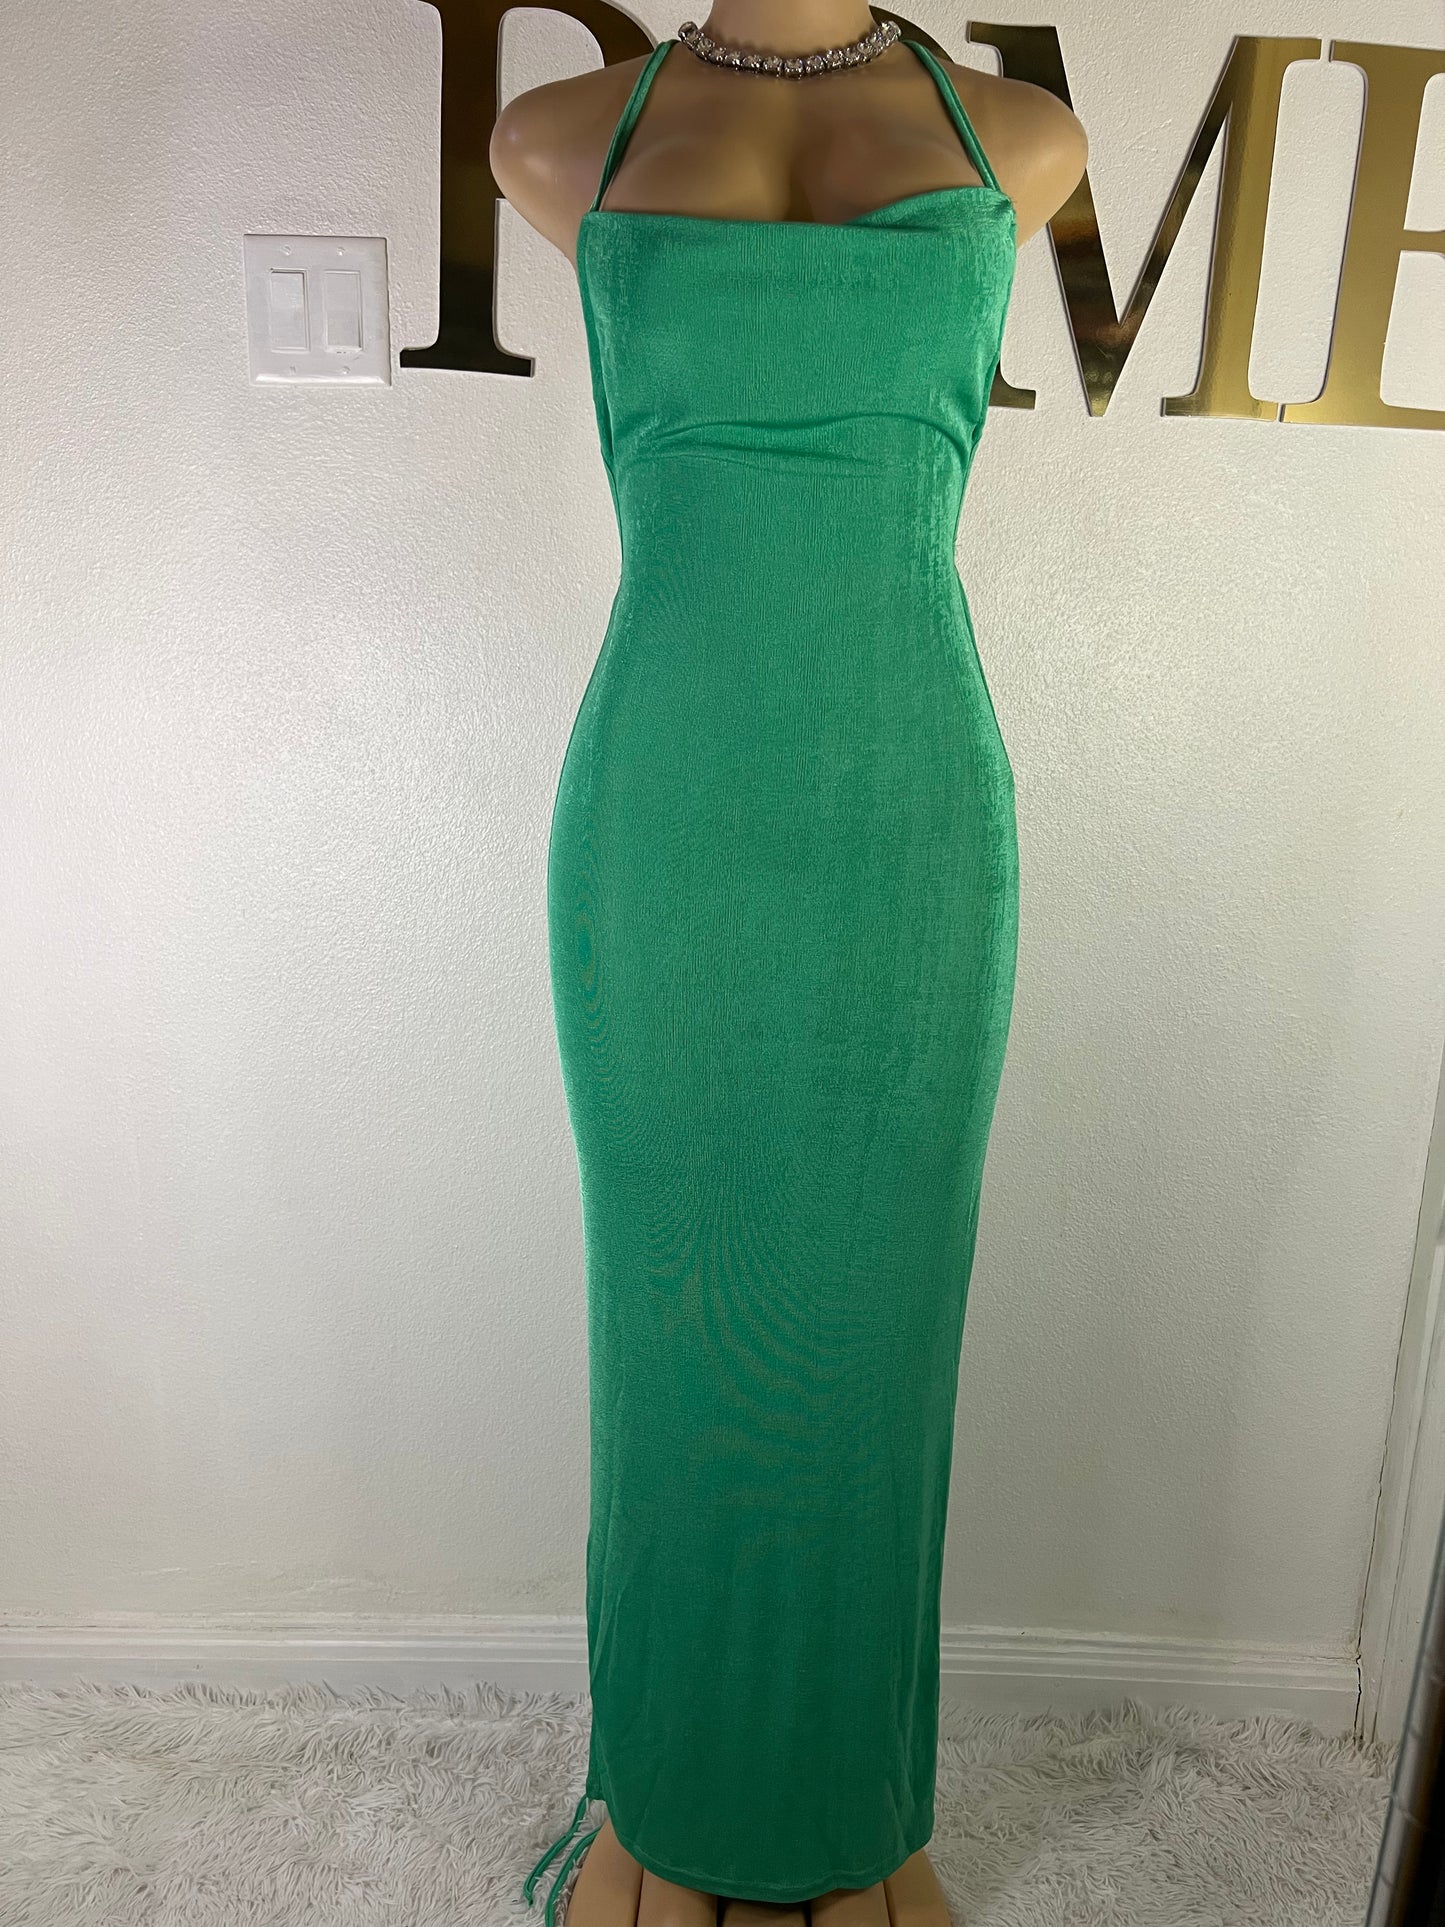 Carey Vibe Dress (Green)